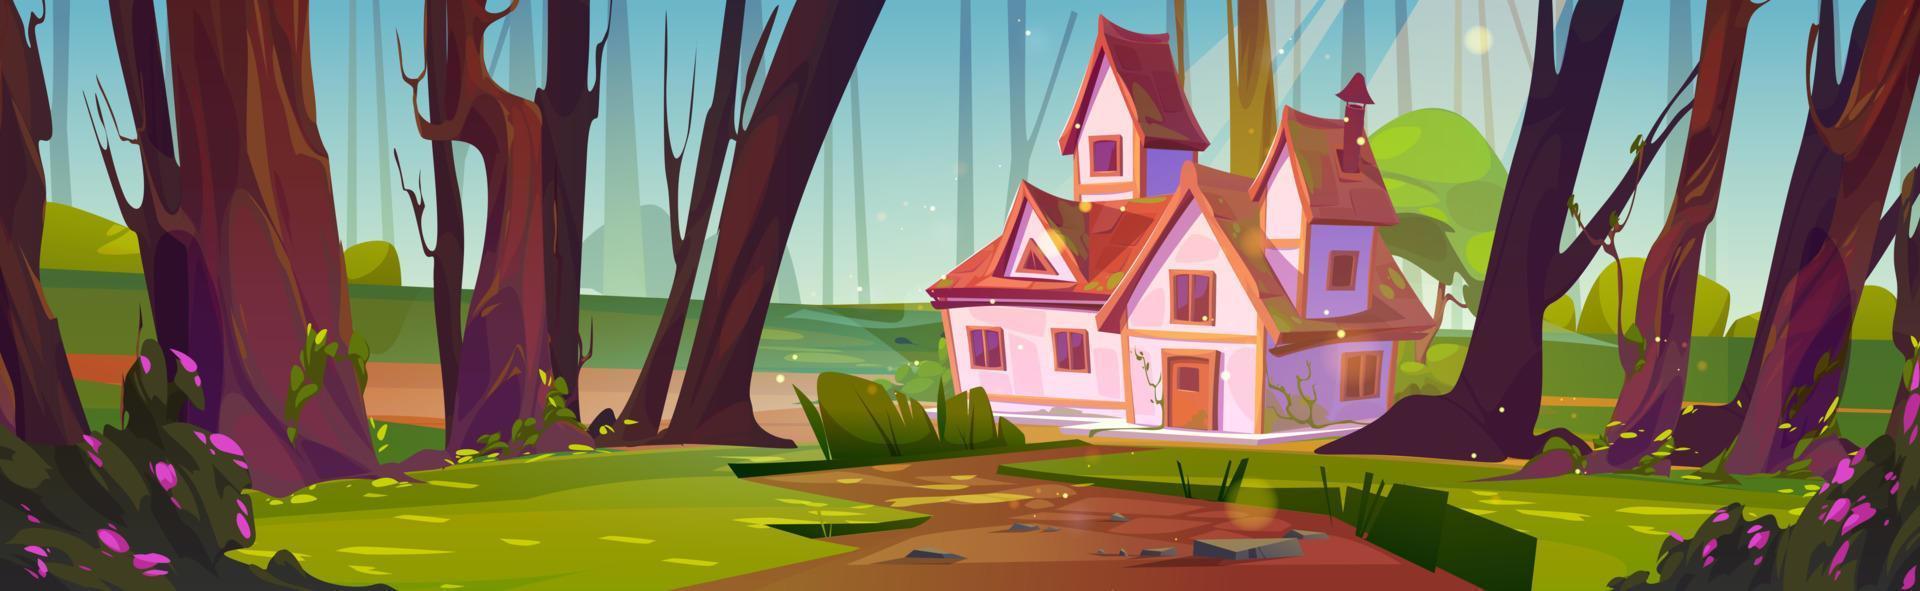 dibujos animados casa en verano bosque vector